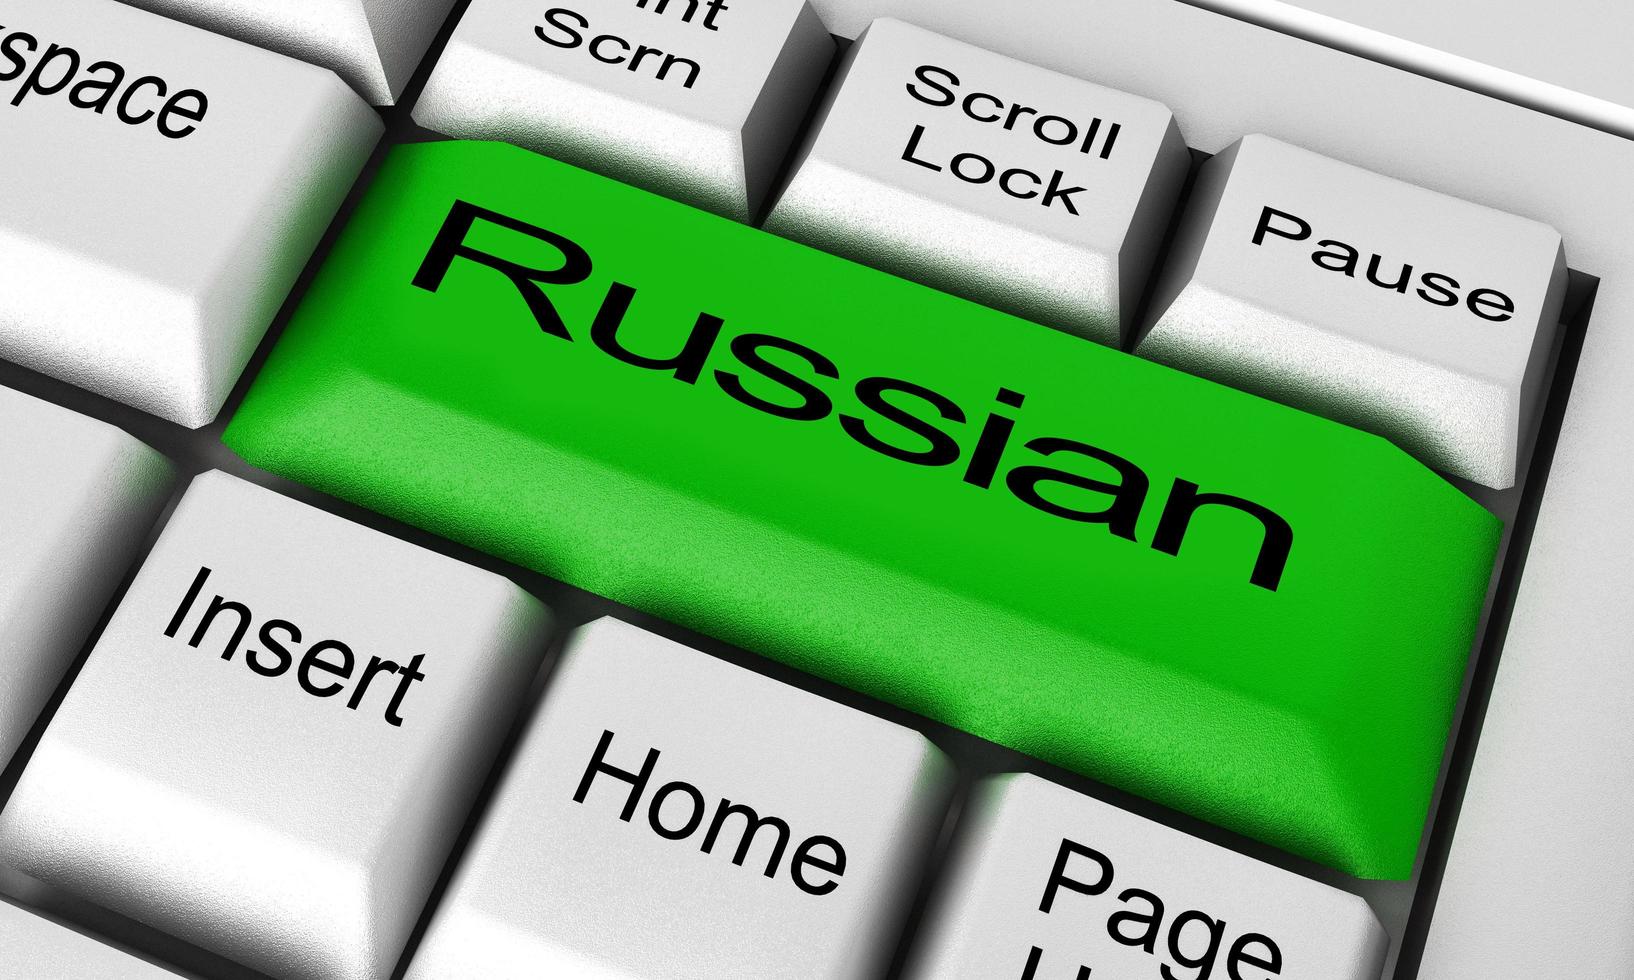 Russisch woord op toetsenbordknop foto